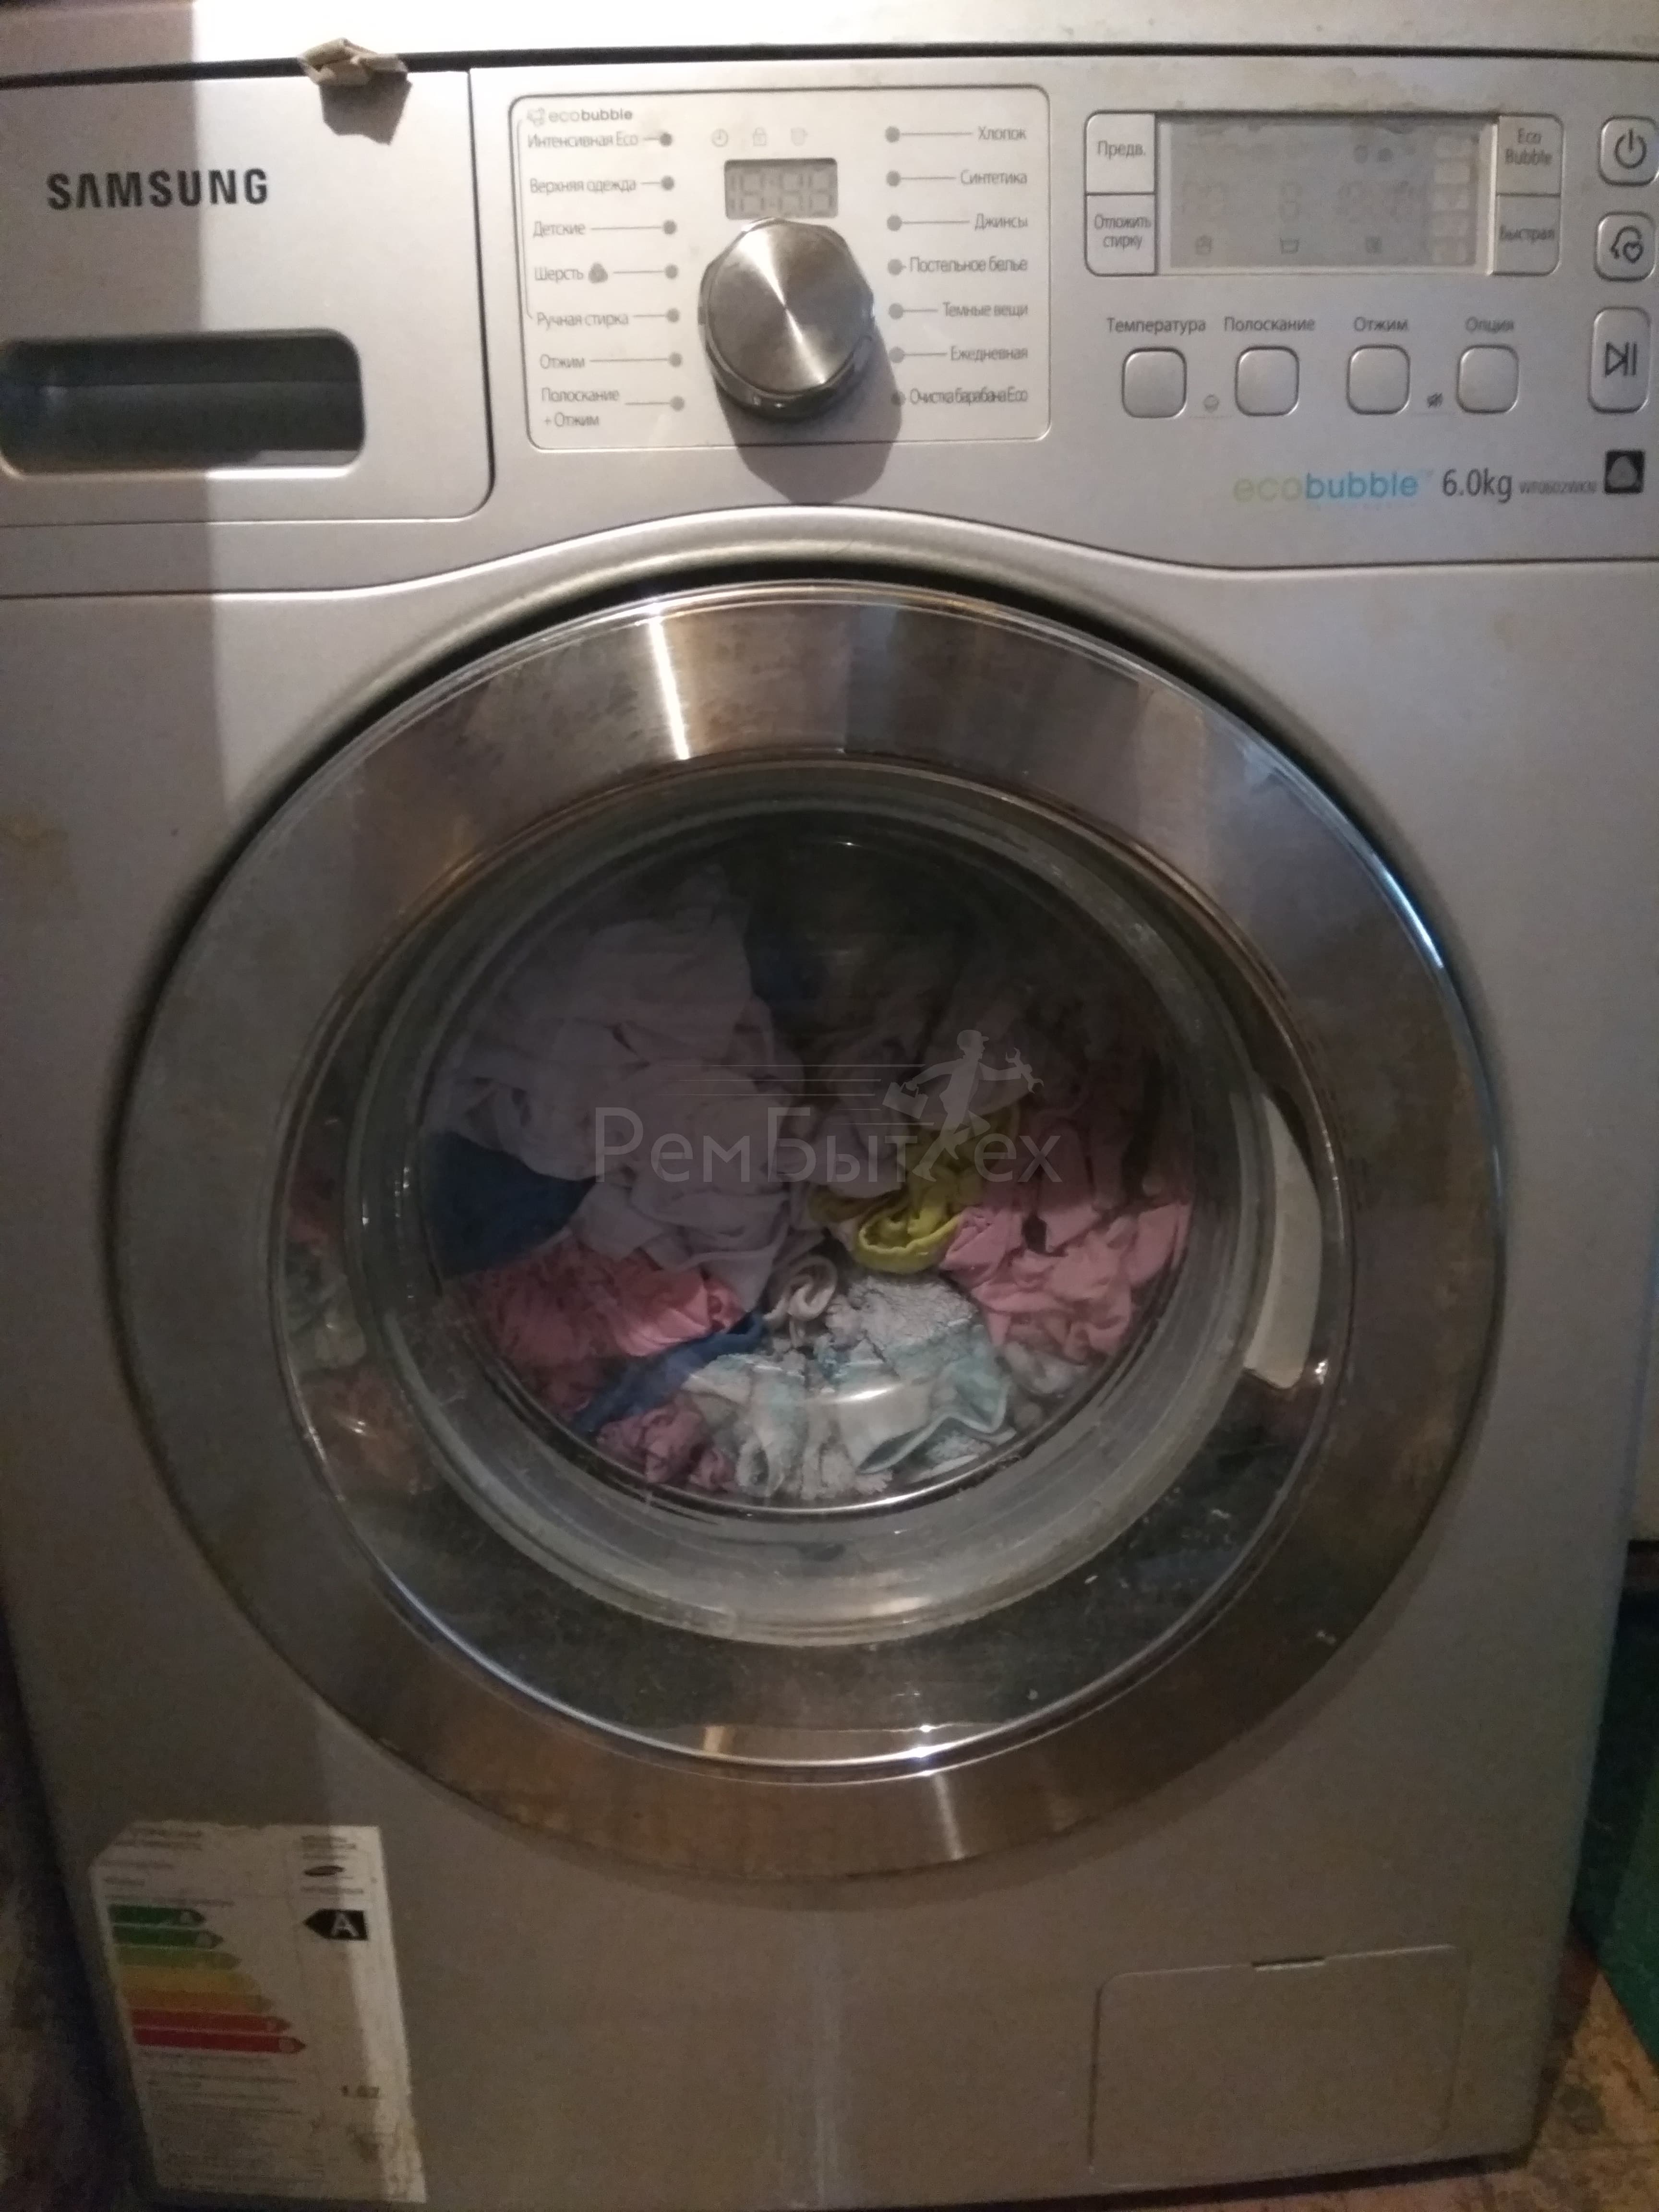 Почему не работает отжим в стиральной машине Самсунг и как это исправить